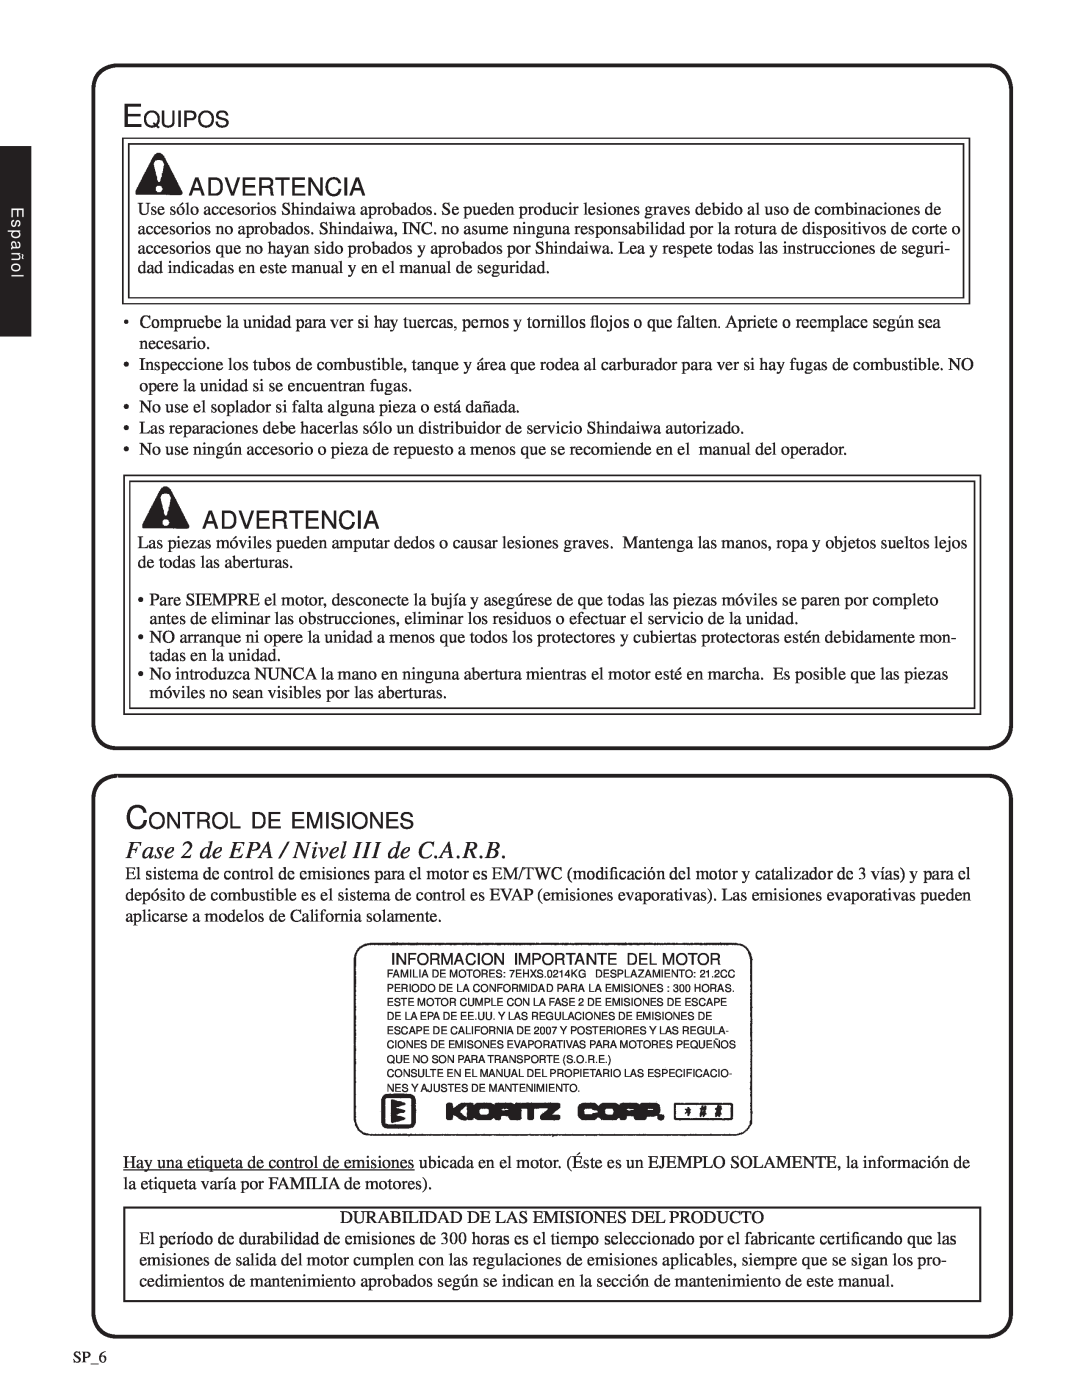 Shindaiwa SV212 Advertencia, Fase 2 de EPA / Nivel III de C.A.R.B, Equipos, Control de emisiones, advertencia, Español 